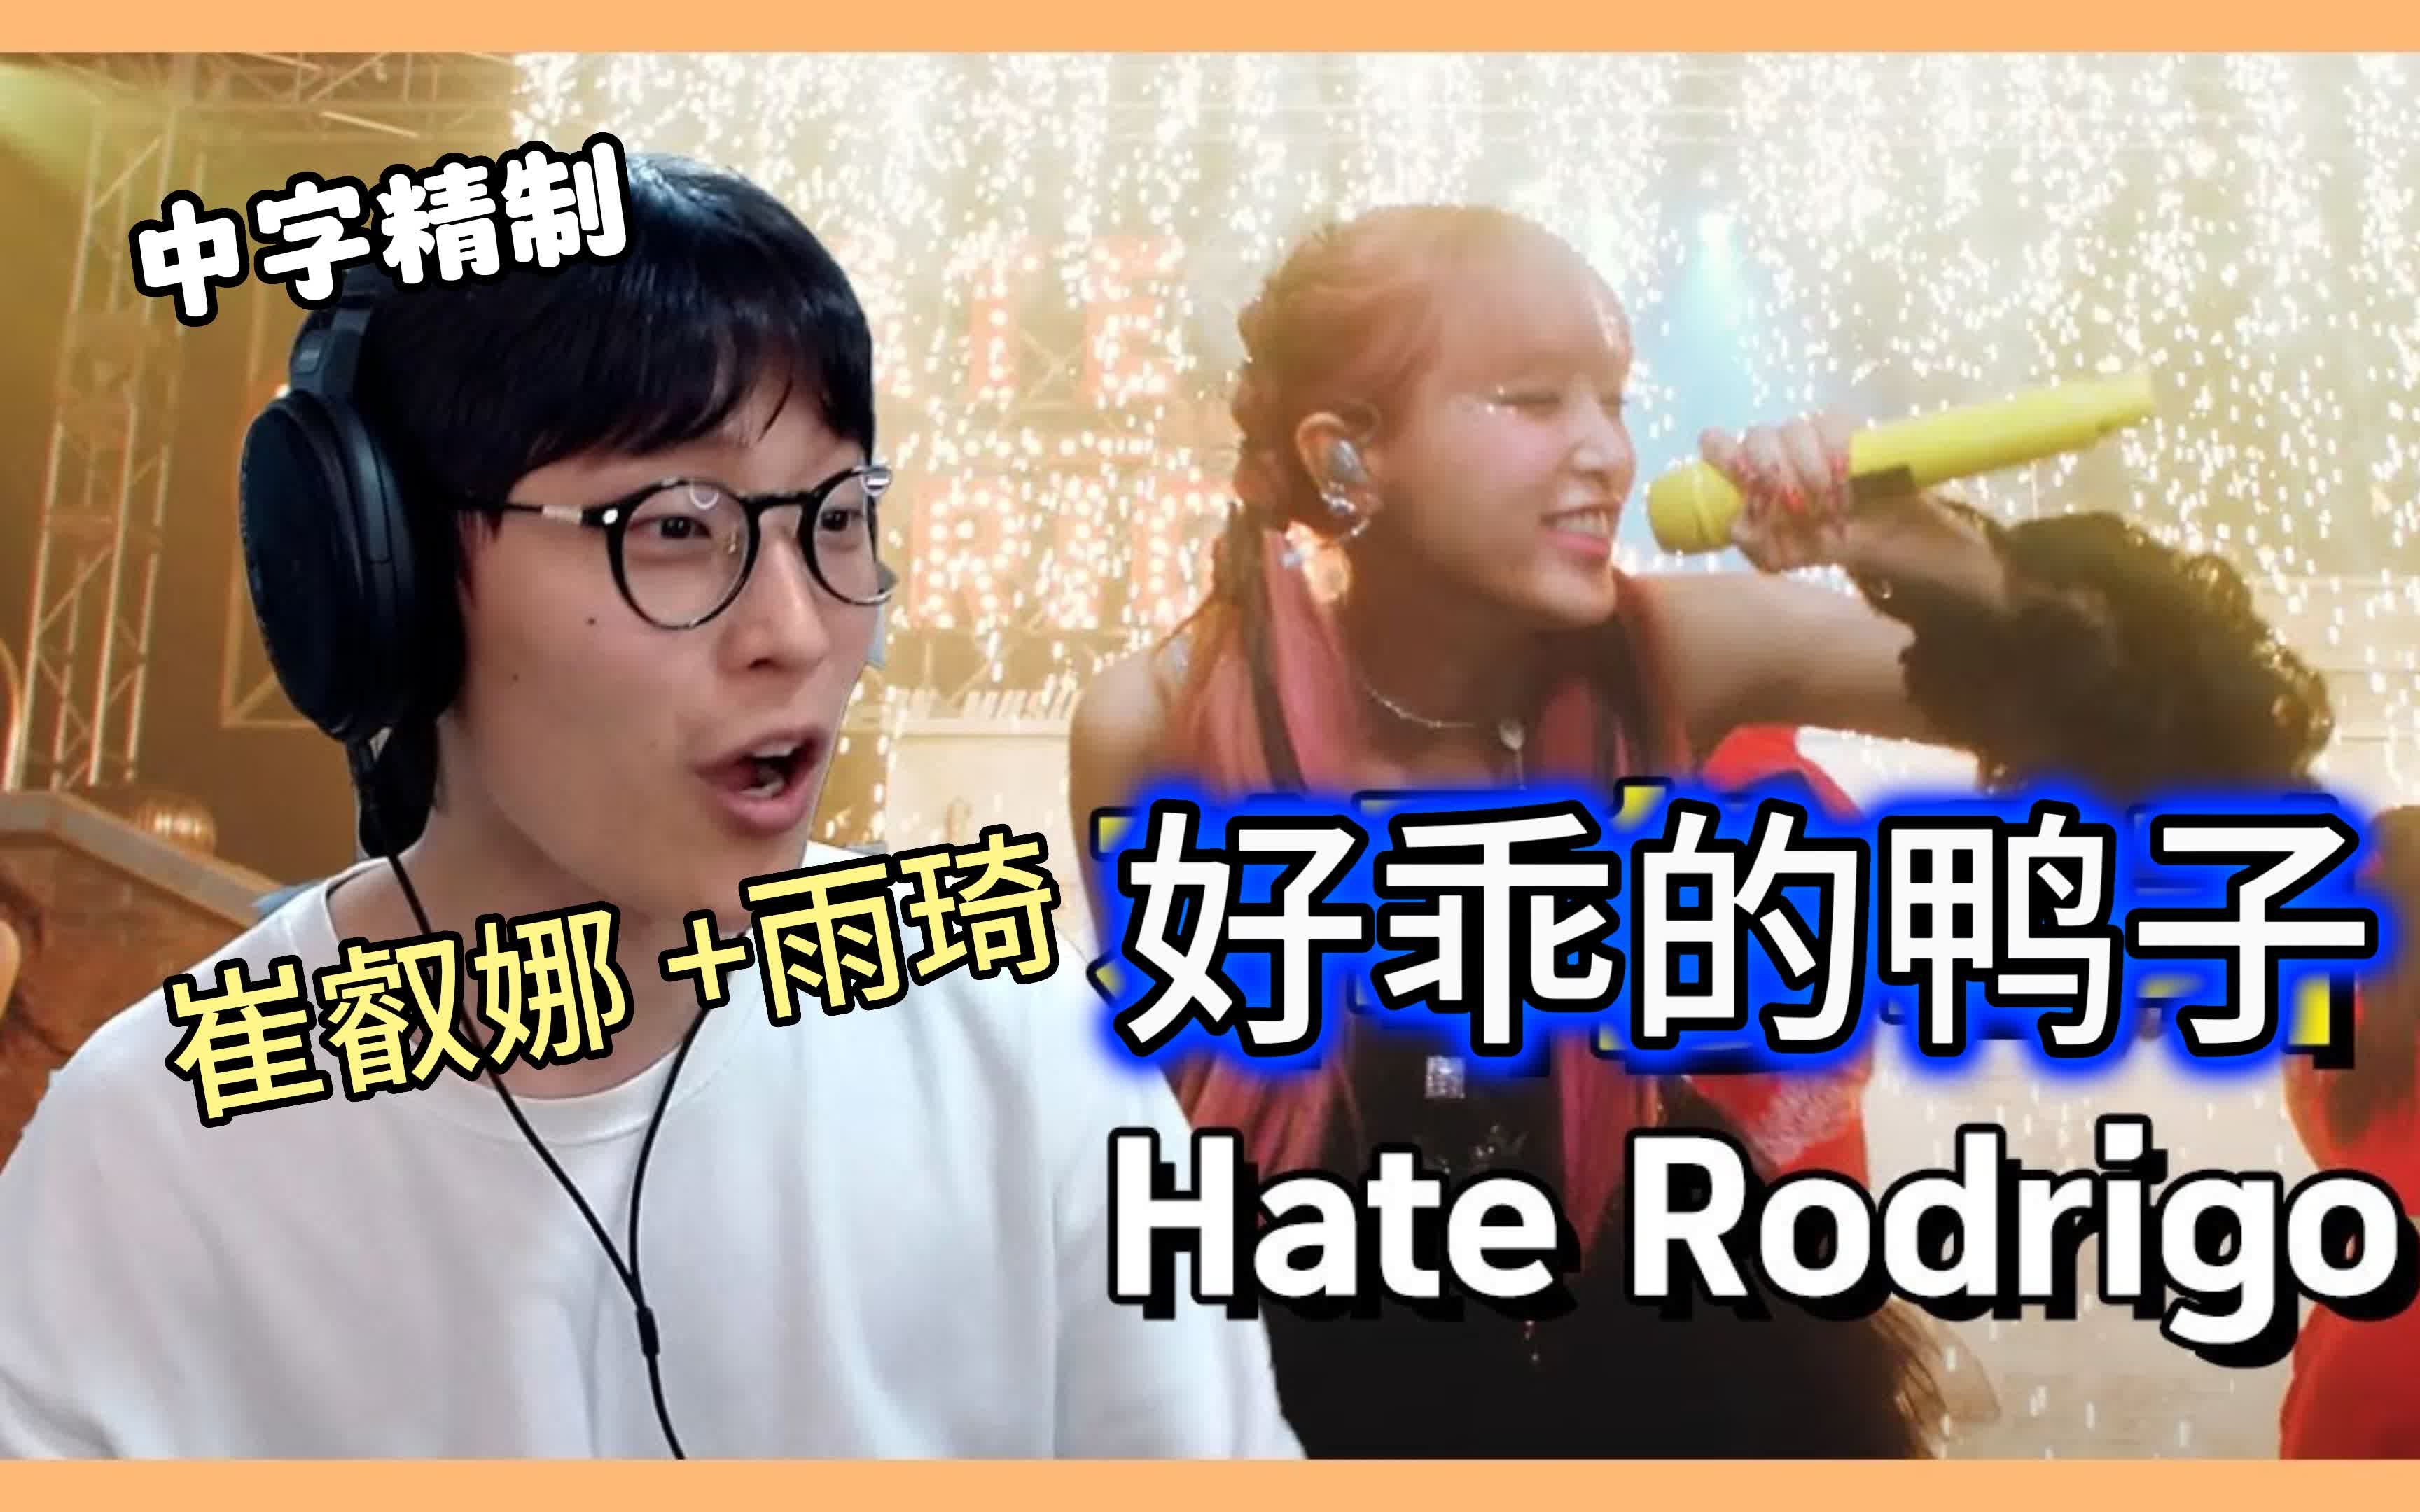 (中字精制)韩国人的真实反应,崔叡娜+雨琦hate rodrigo,reaction